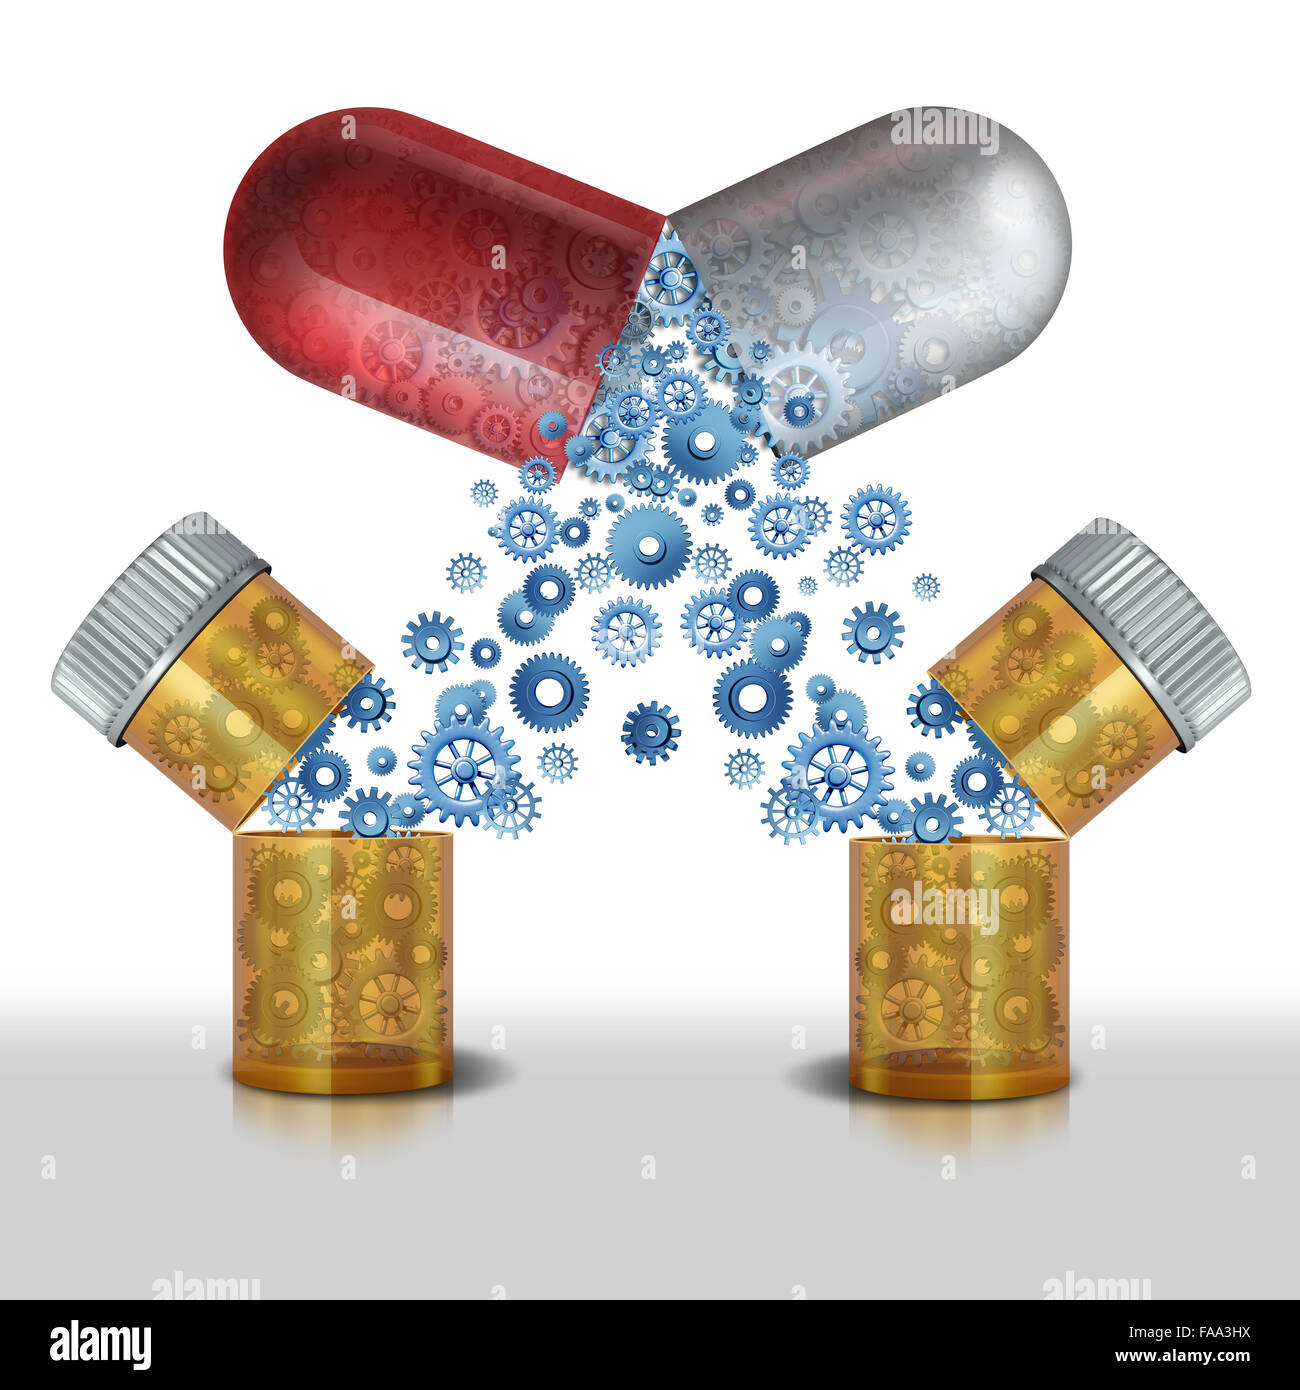 Medizin-Interaktion und Mehrzweck Drogen- oder Sicherheit sorgen der Arzneimittel oder medizinische Präparate Konzept kombinieren Stockfoto